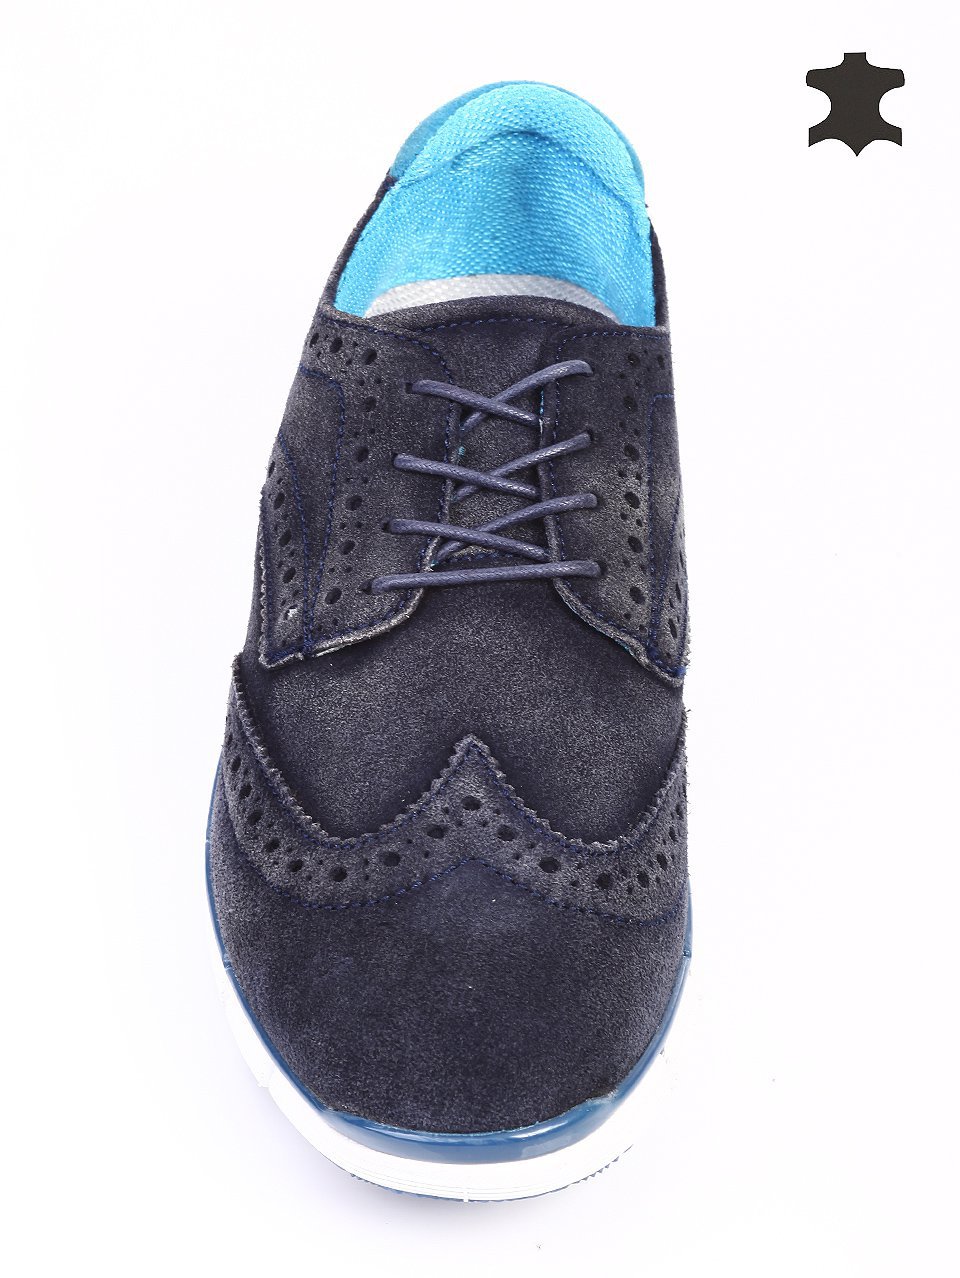 Ежедневни мъжки обувки от естествен велур в синьо 7N-15708 navy